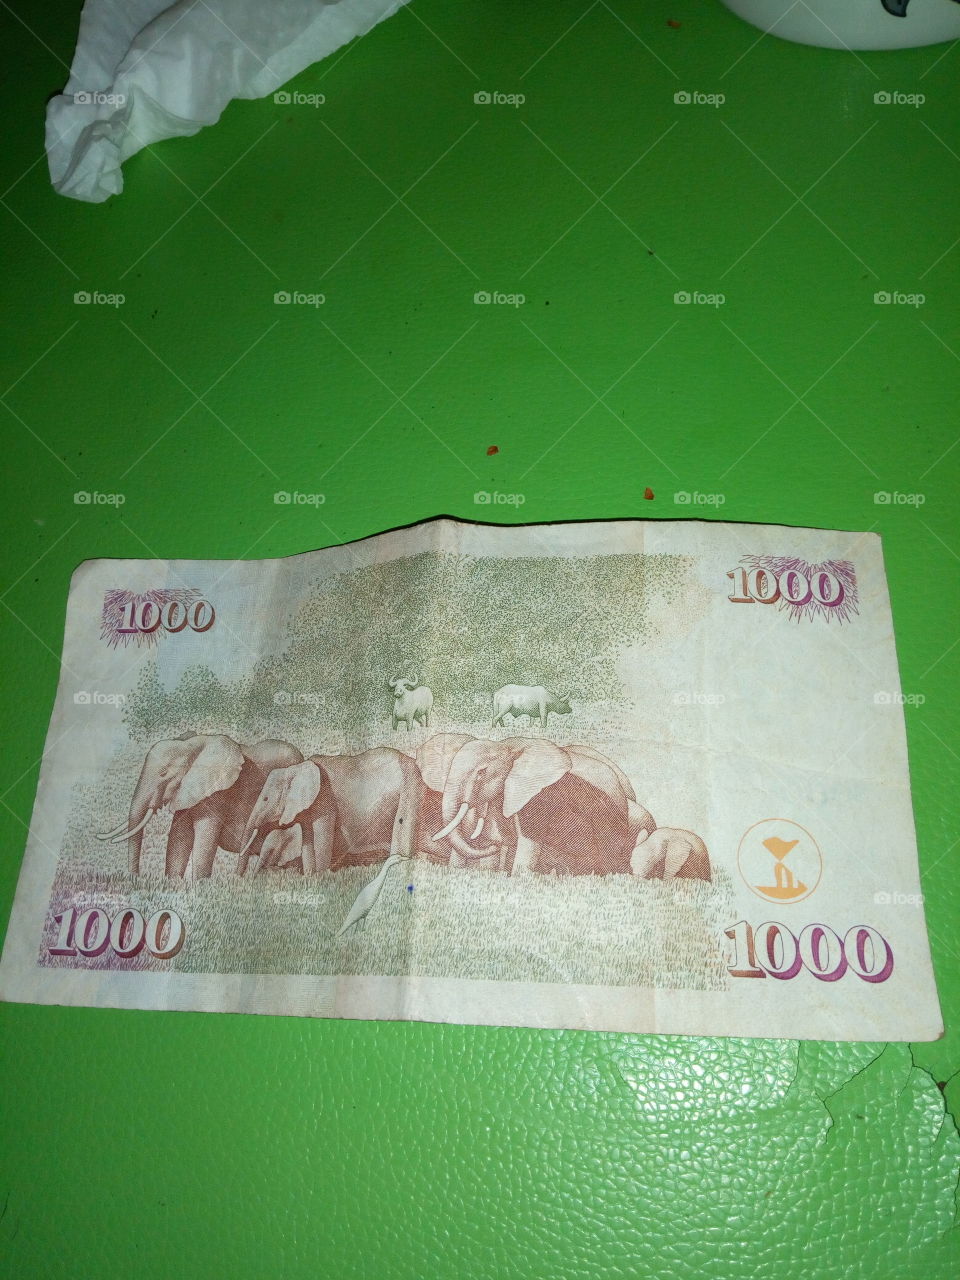 kenyan money